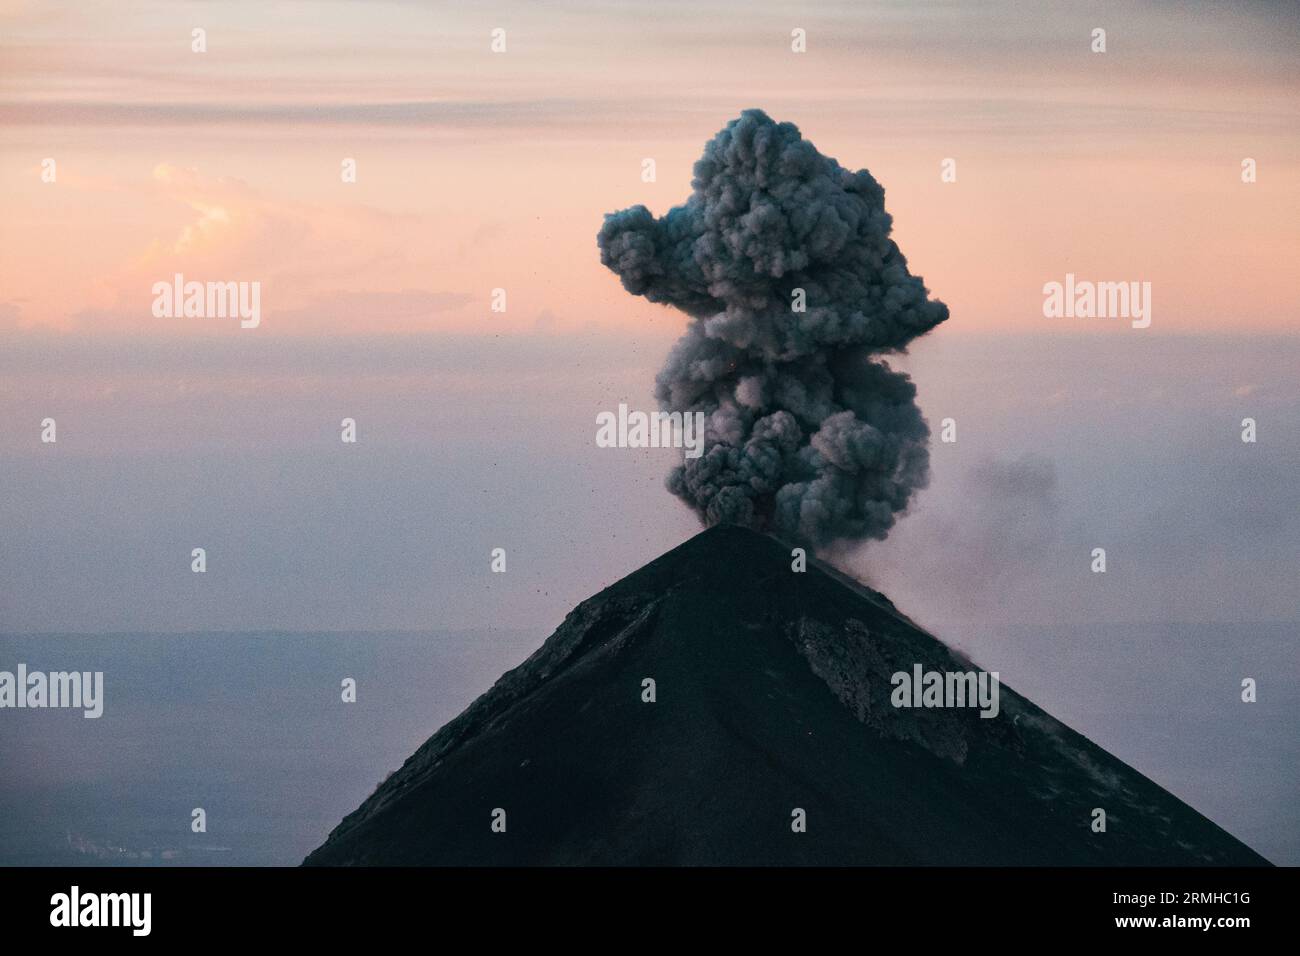 Un pennacchio di fumo e cenere erutta dal cratere del vulcano Fuego, visto dall'adiacente vulcano Acatenango, Guatemala, all'alba Foto Stock